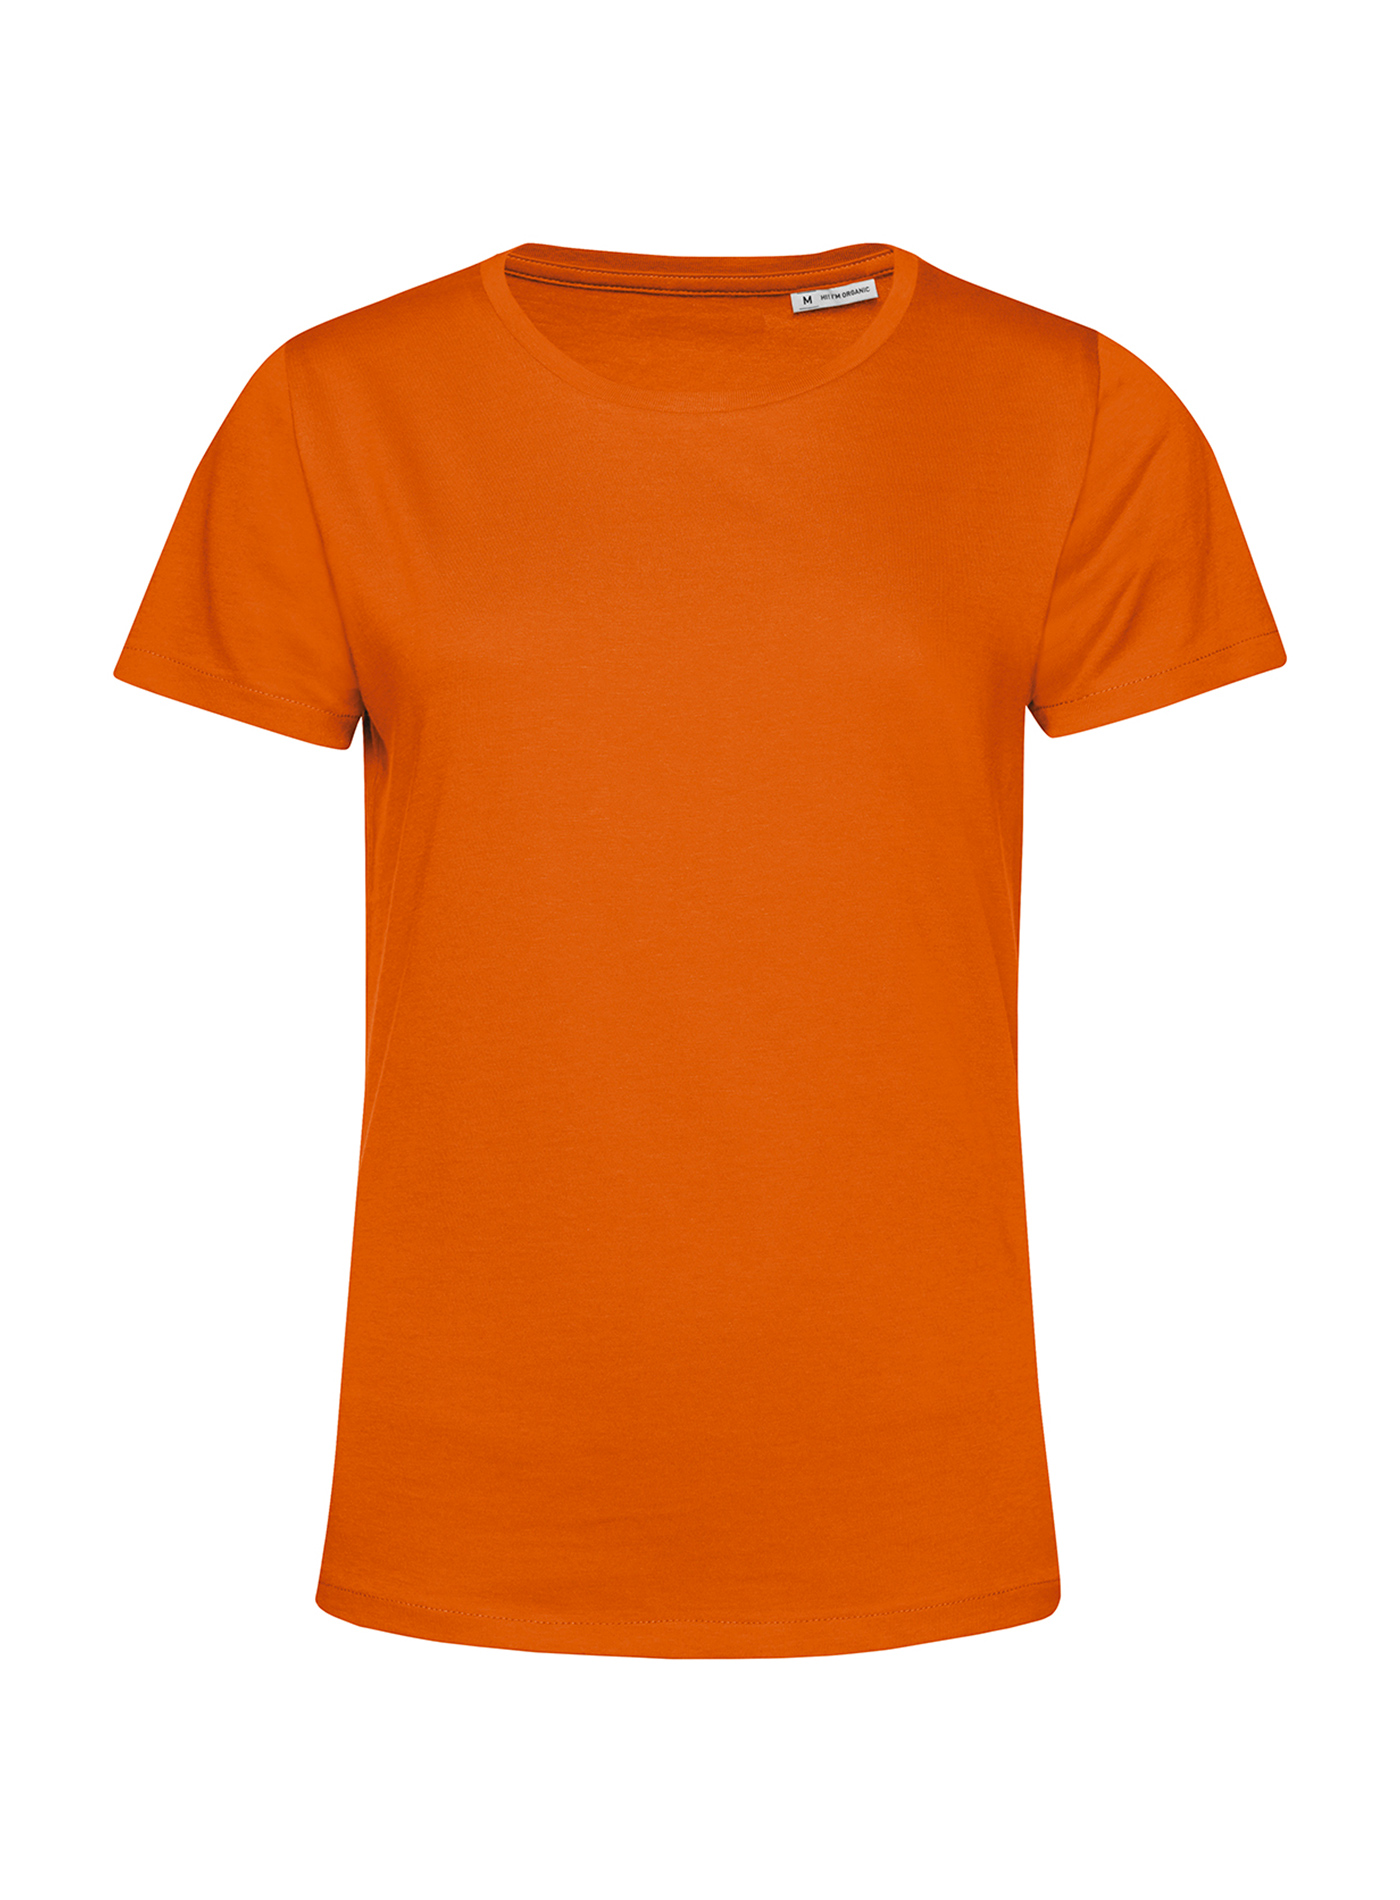 Dámské tričko B&C Collection Organic - Oranžová S